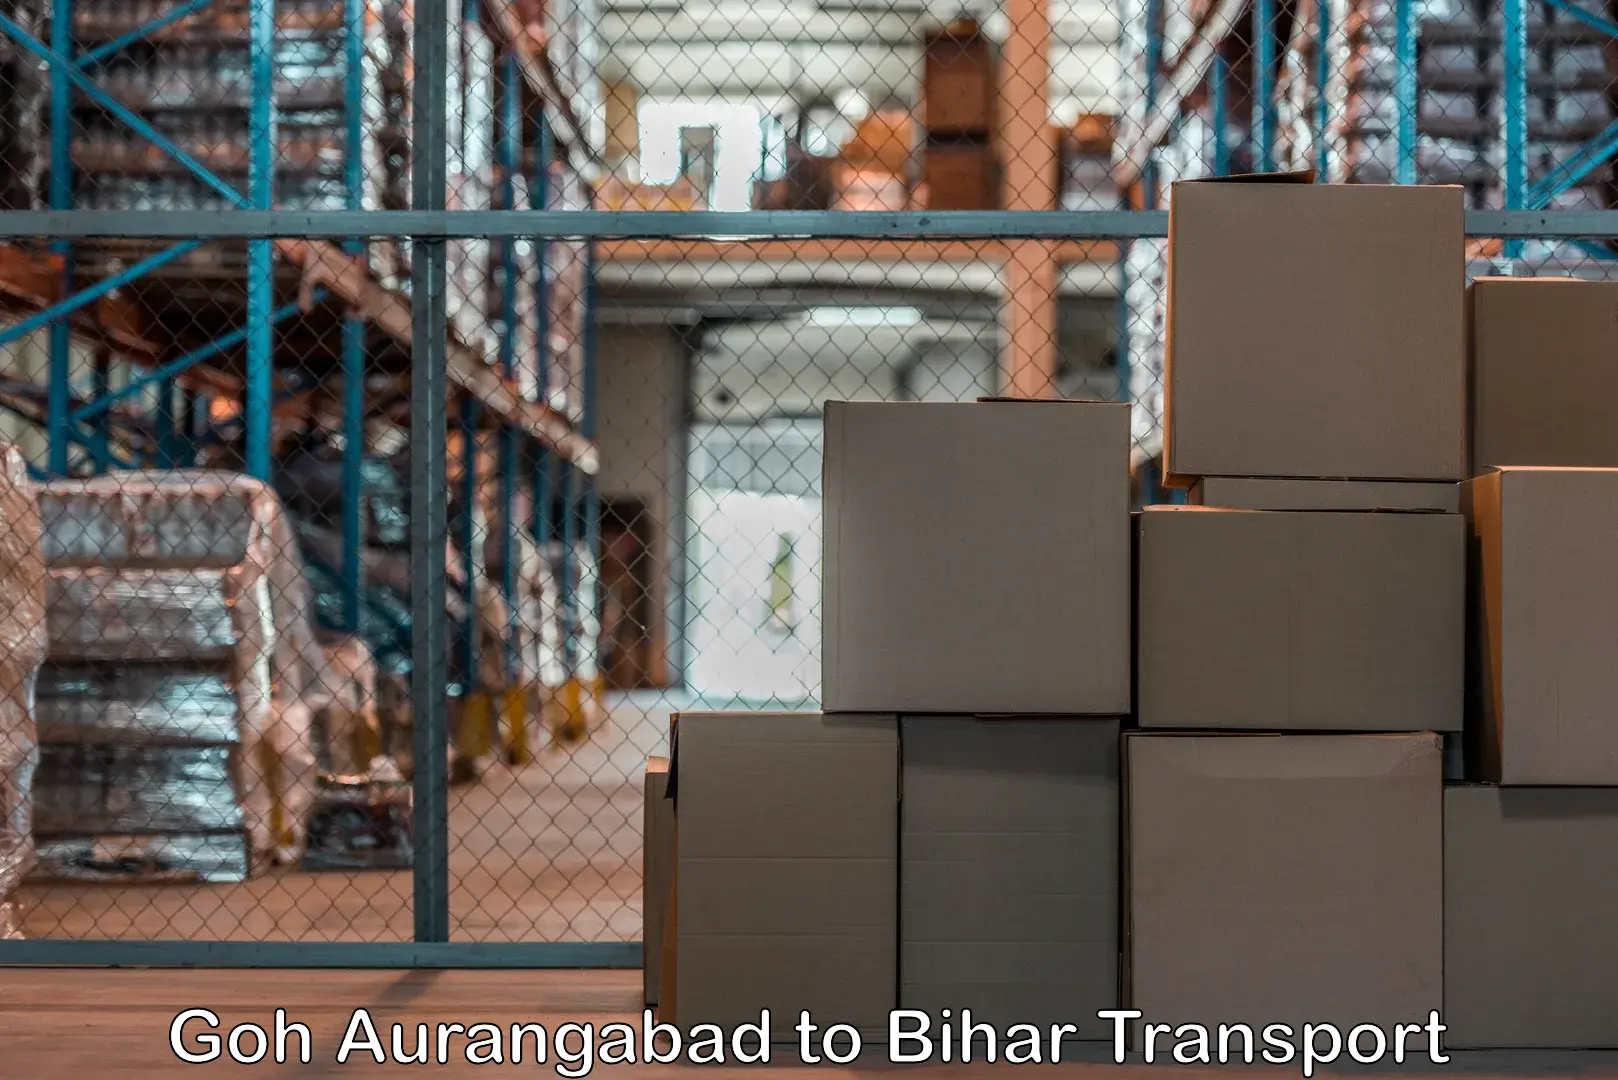 Shipping services Goh Aurangabad to Dumraon